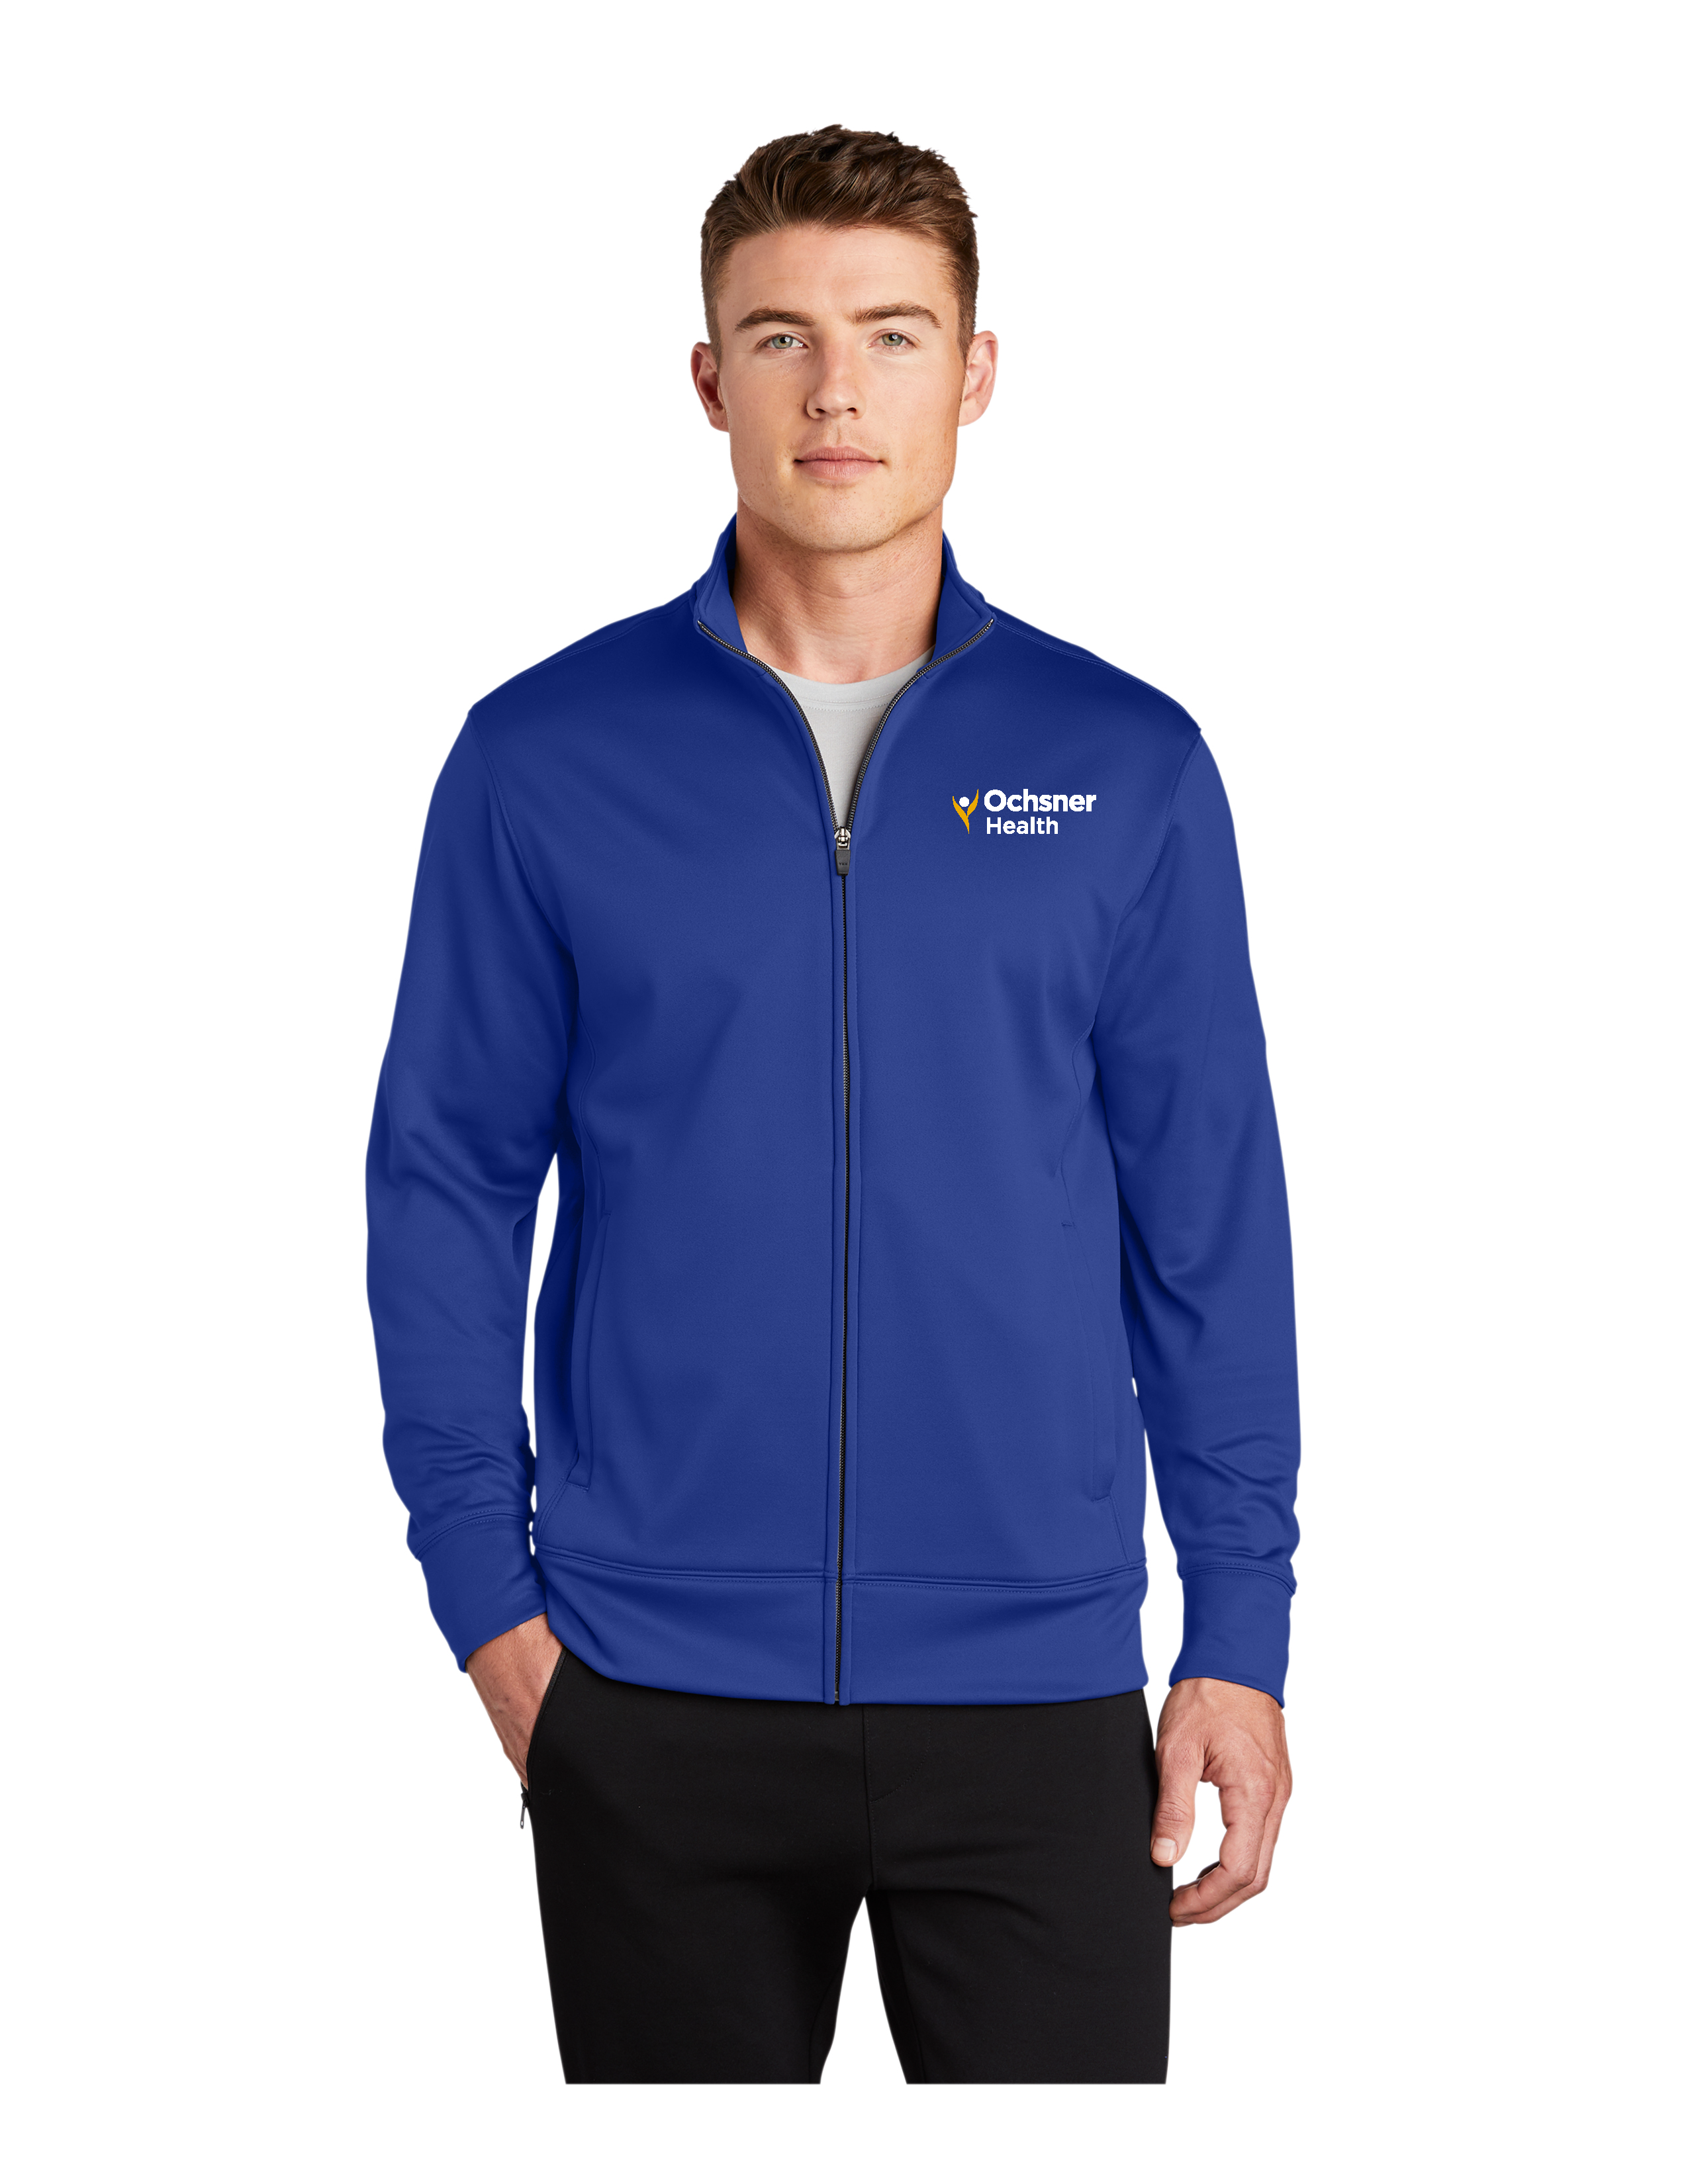 Men's Sportwick Fleece Jacket, Royal, large image number 1